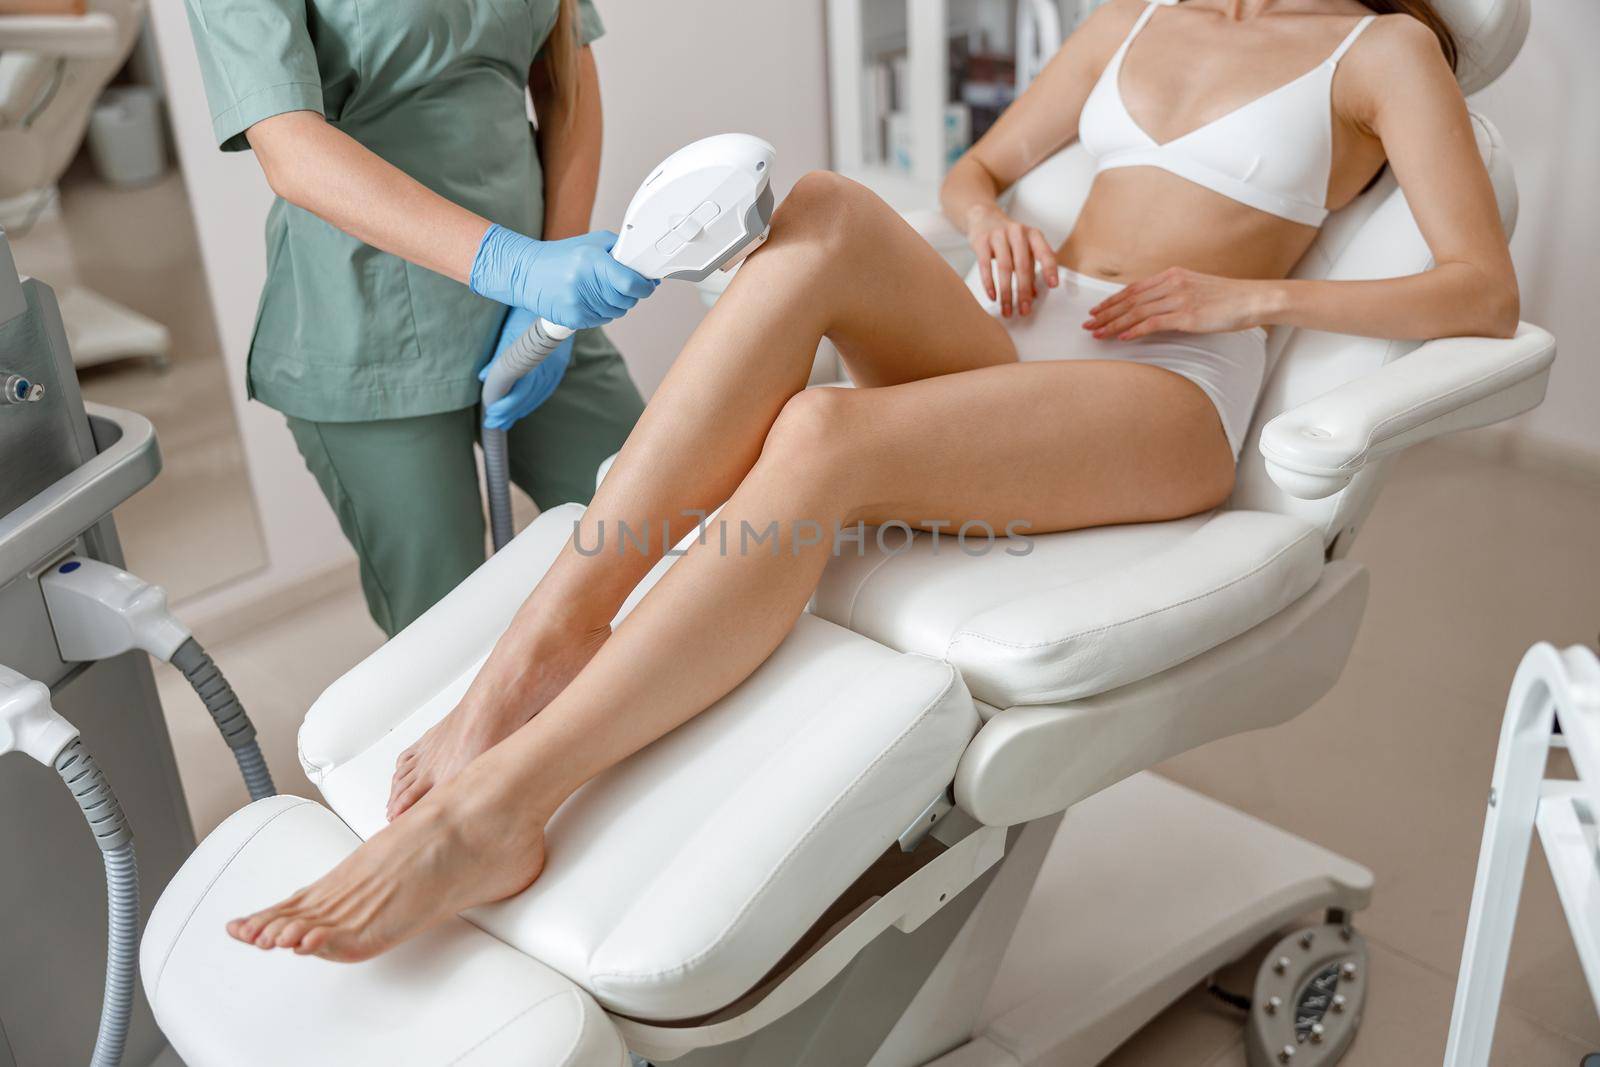 Photo epilation, hair removal procedure on legs skin in beauty salon. Woman in underwear